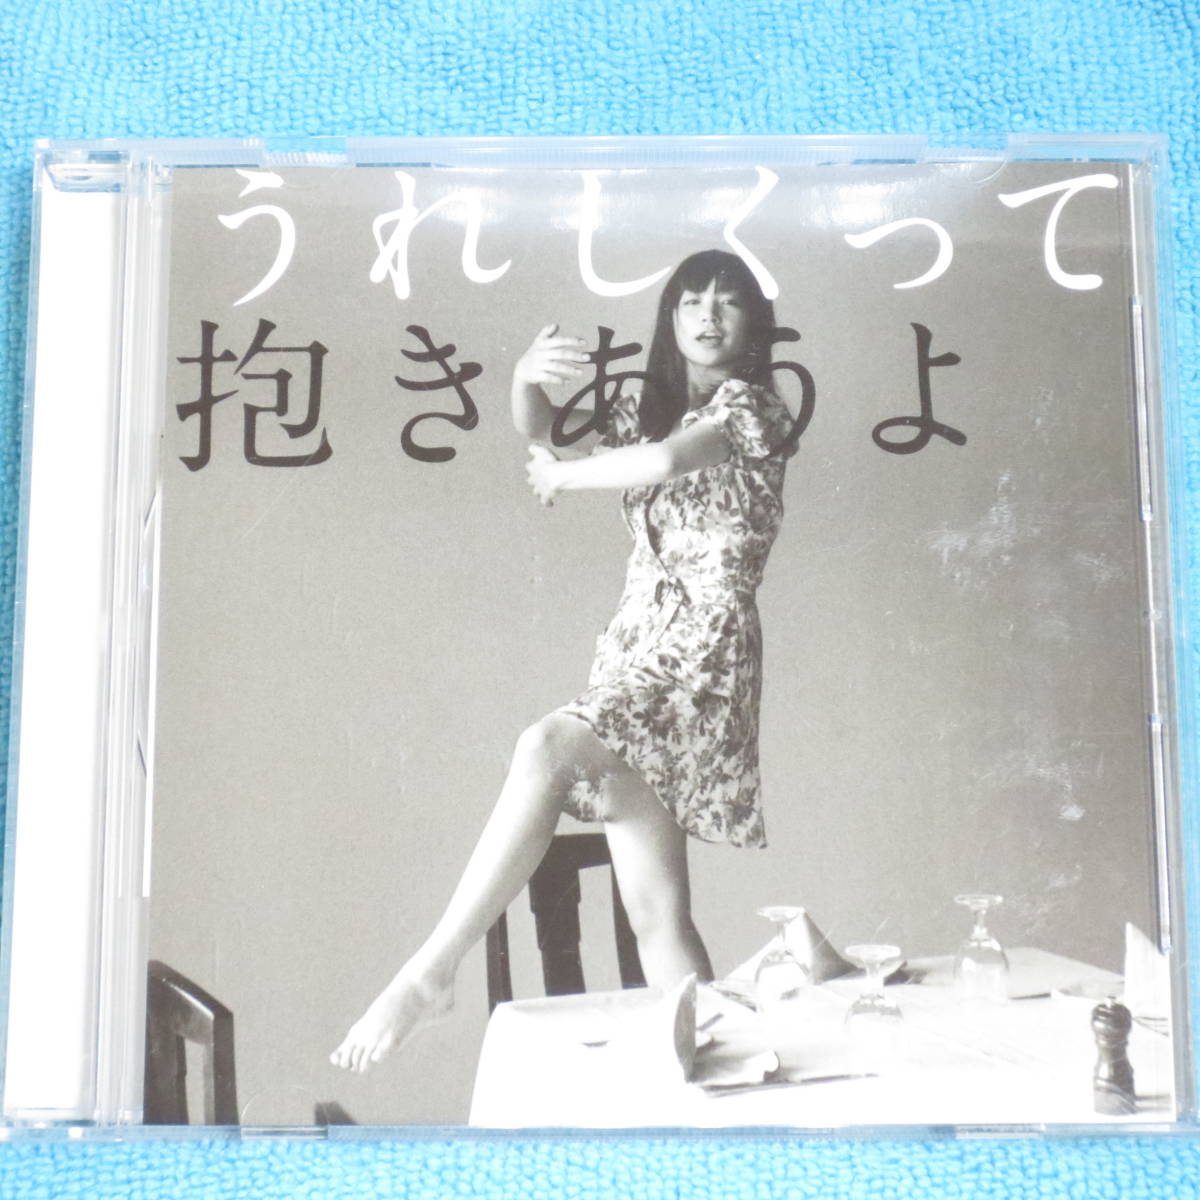 [CD] YUKI「うれしくって抱きあうよ」 5thアルバム☆帯付き_画像1